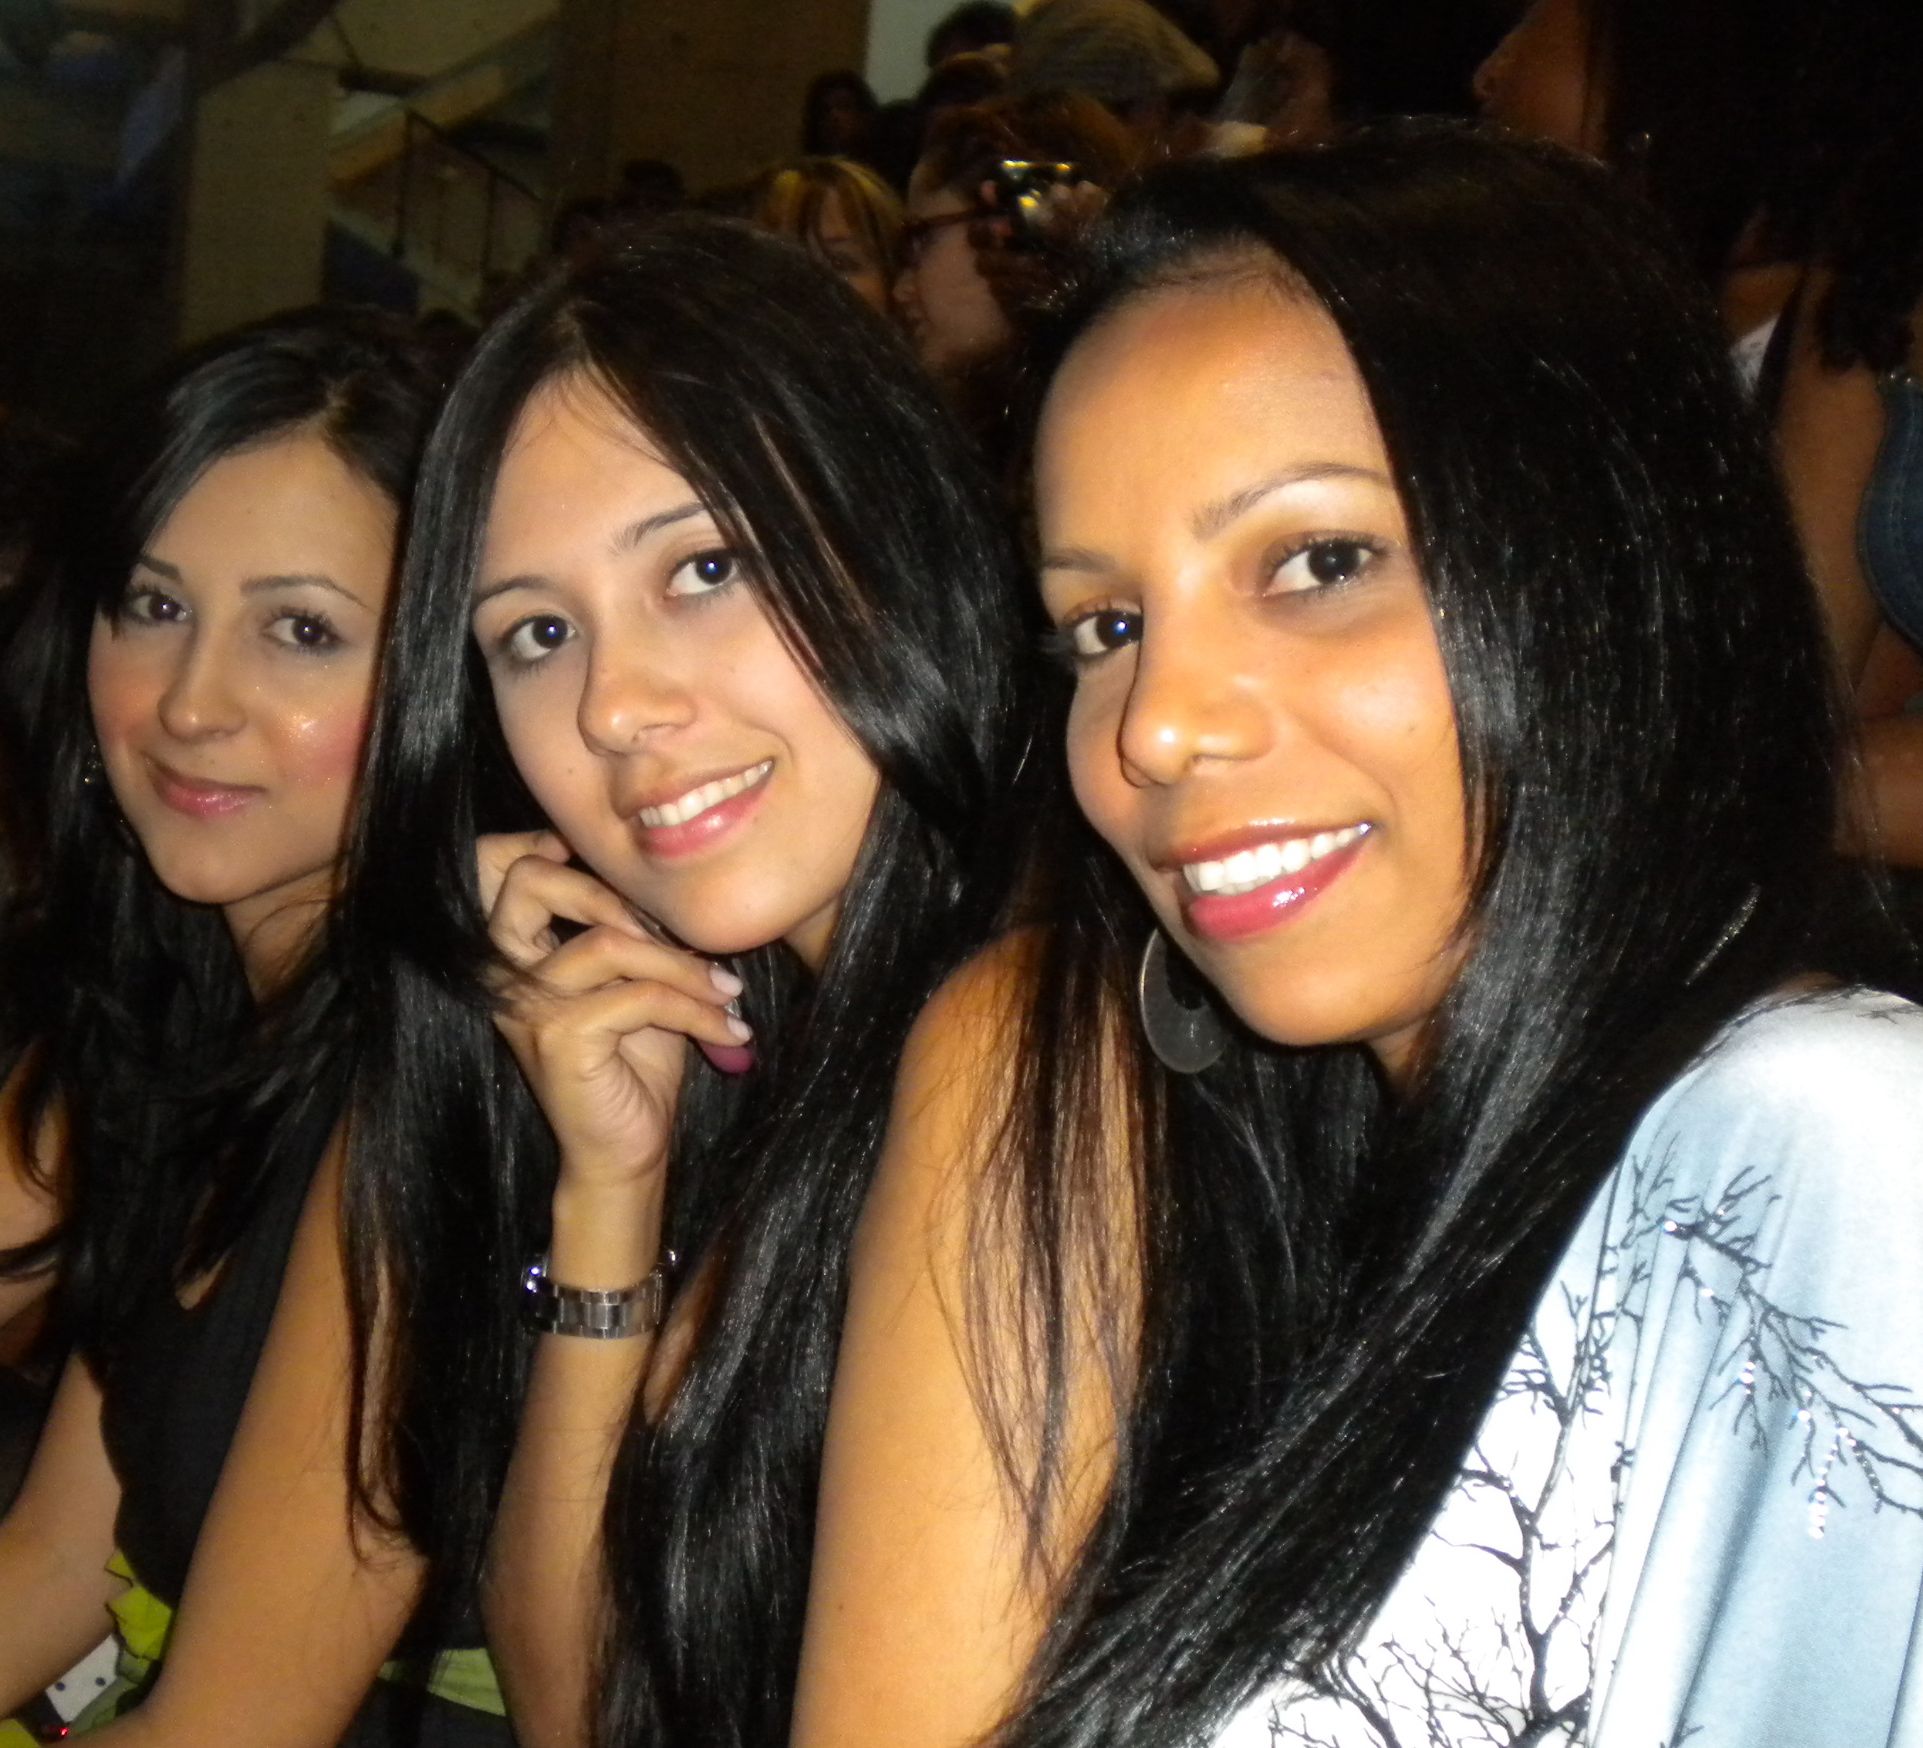 Medellin colombia nightlife women